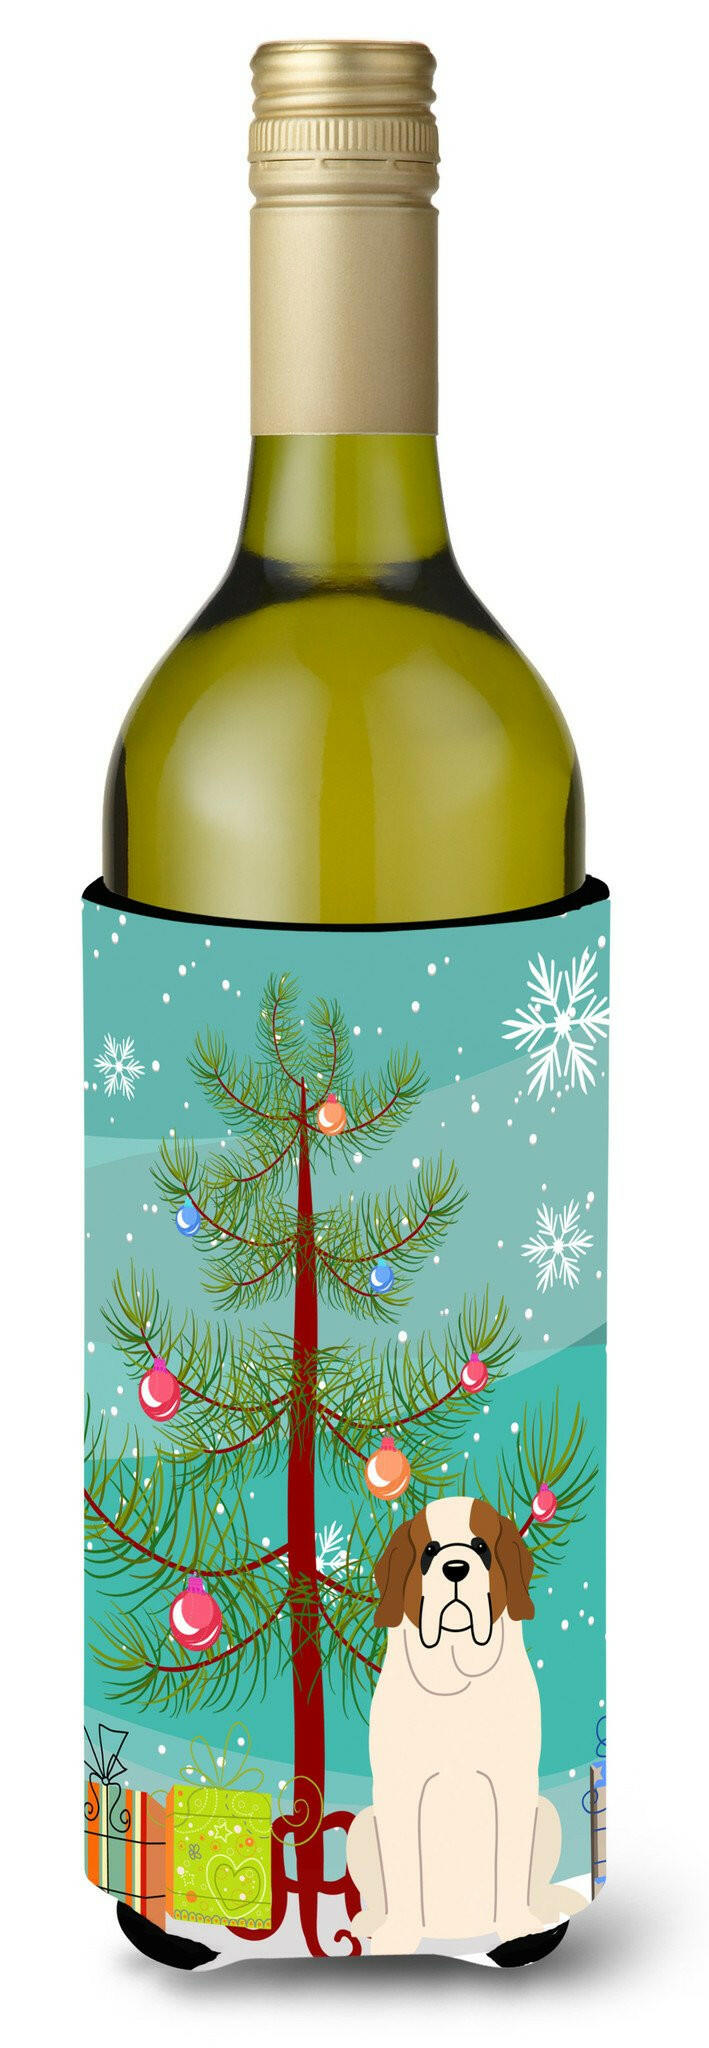 Merry Christmas Tree Saint Bernard Wine Bottle Beverge Insulator Hugger BB4160LITERK by Caroline's Treasures